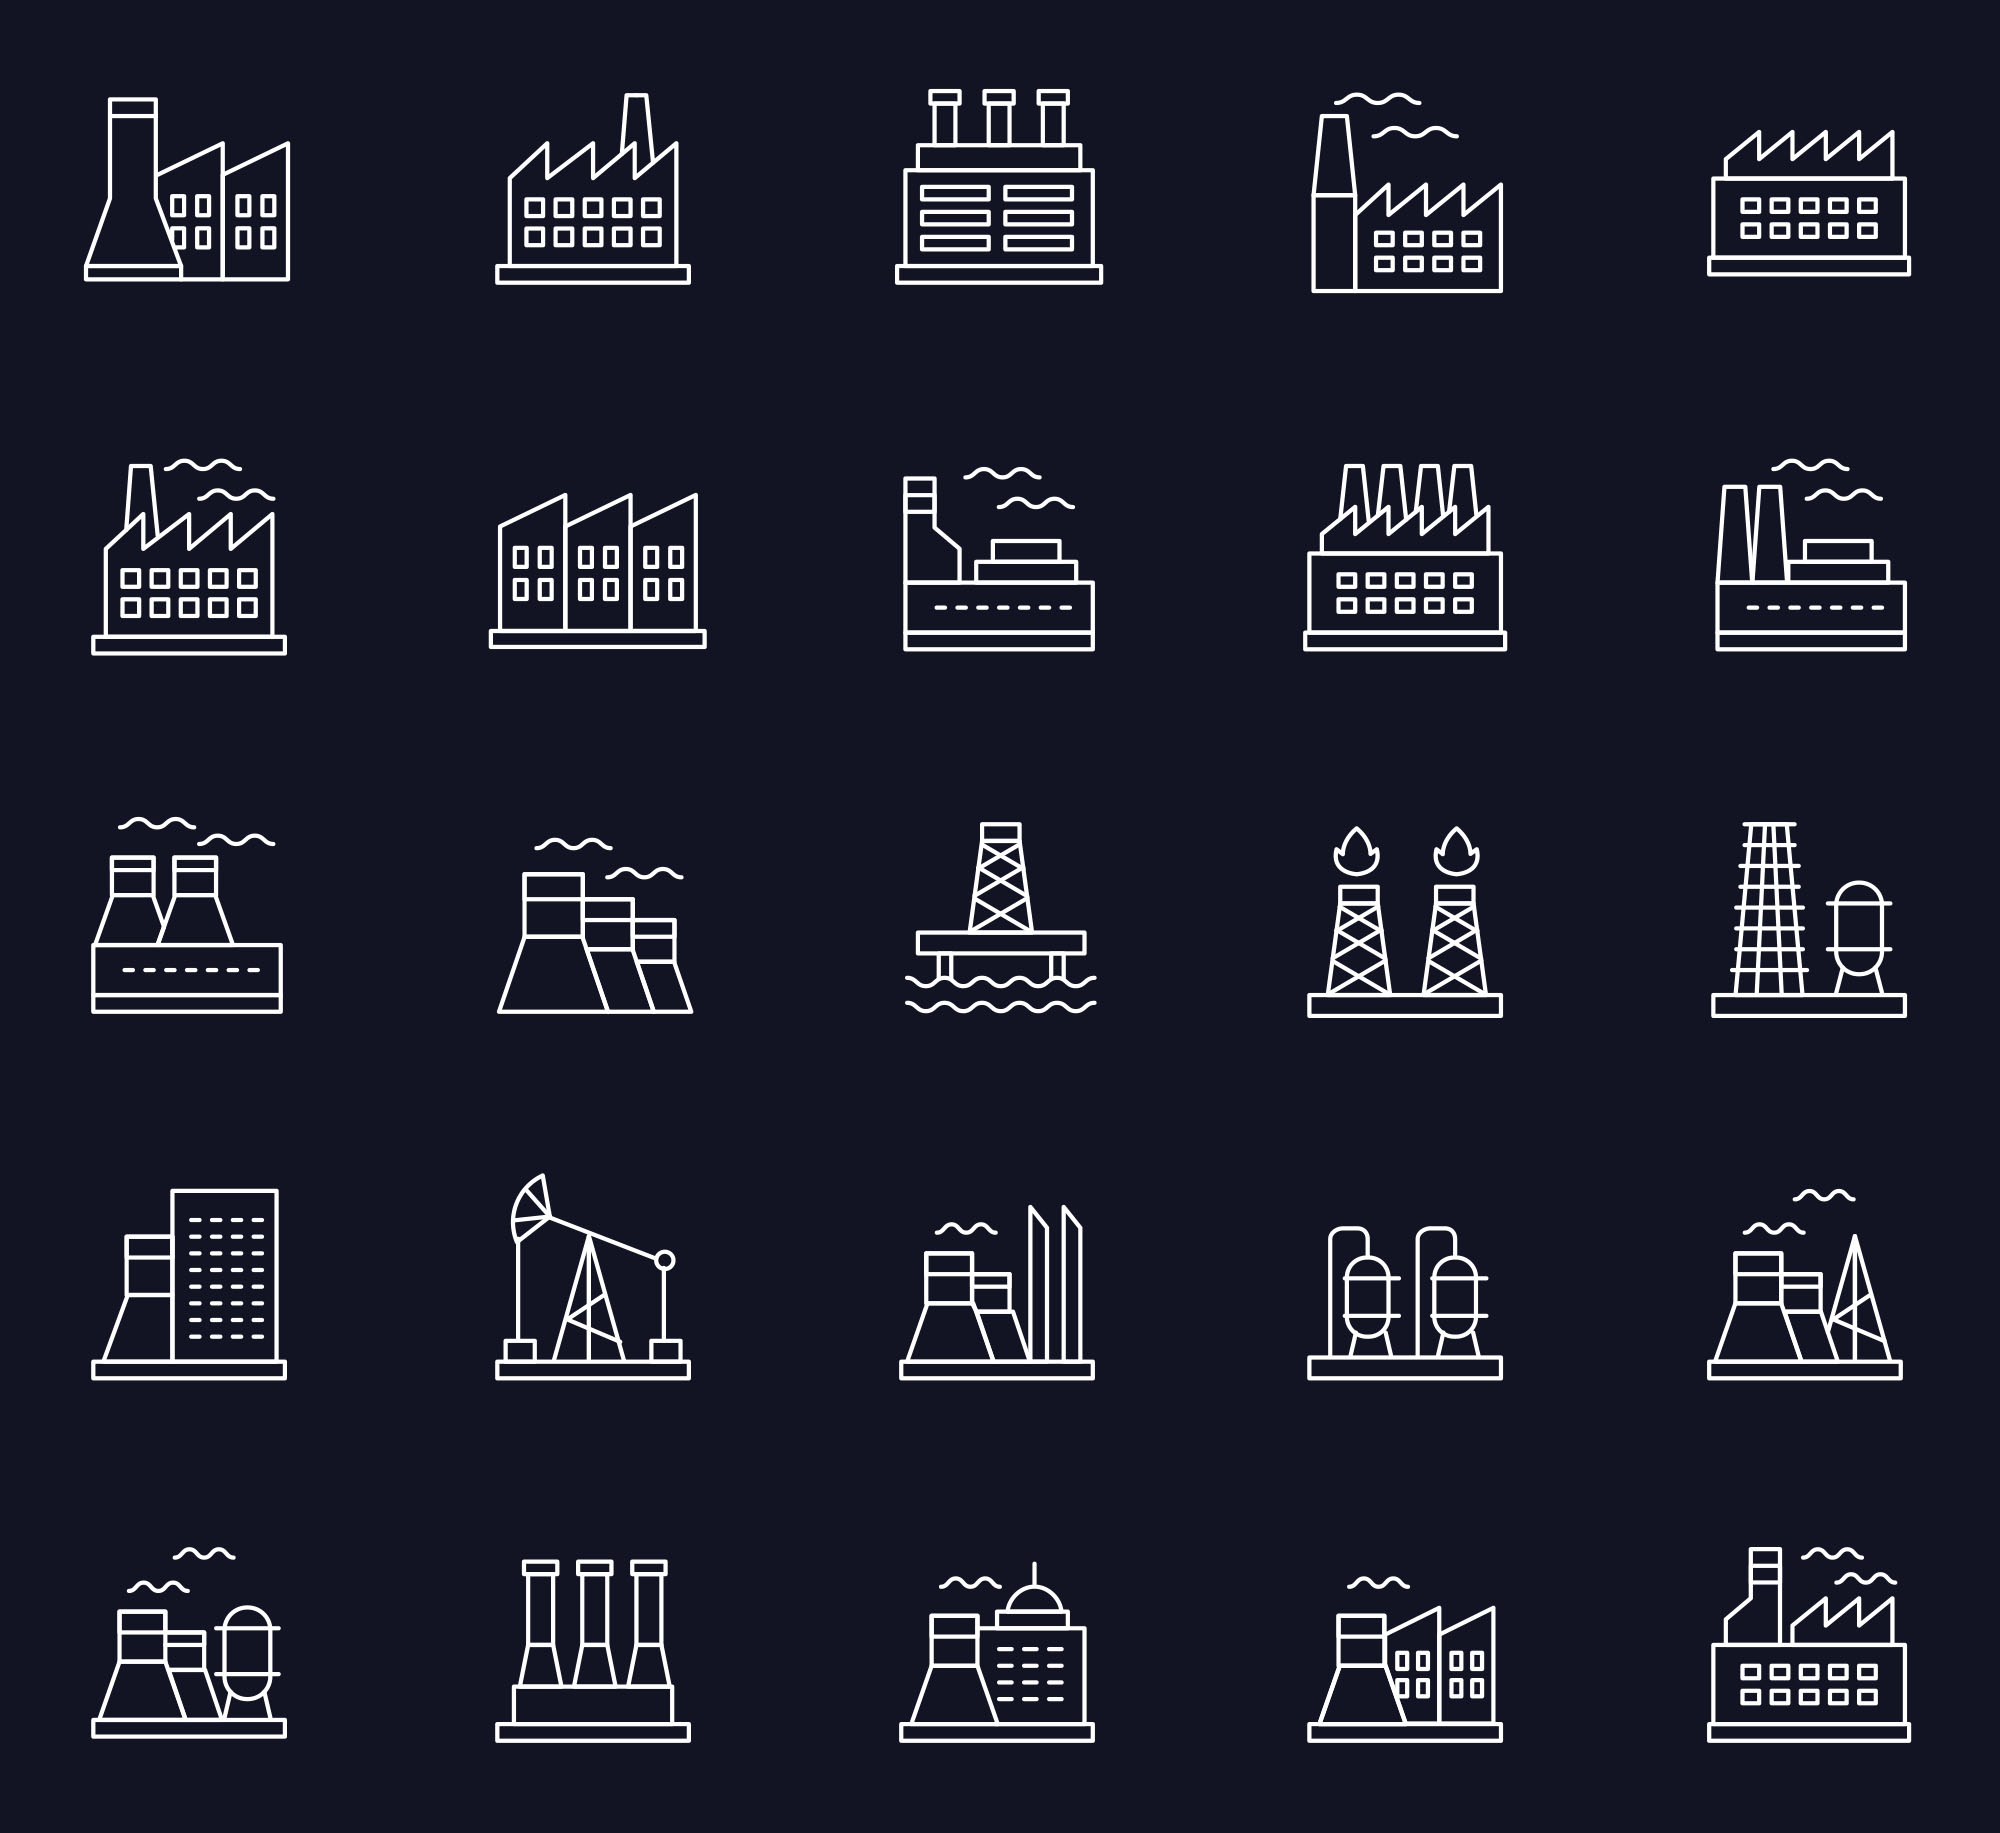 25枚建筑线性图标设计素材 25 Free Industry Icons插图